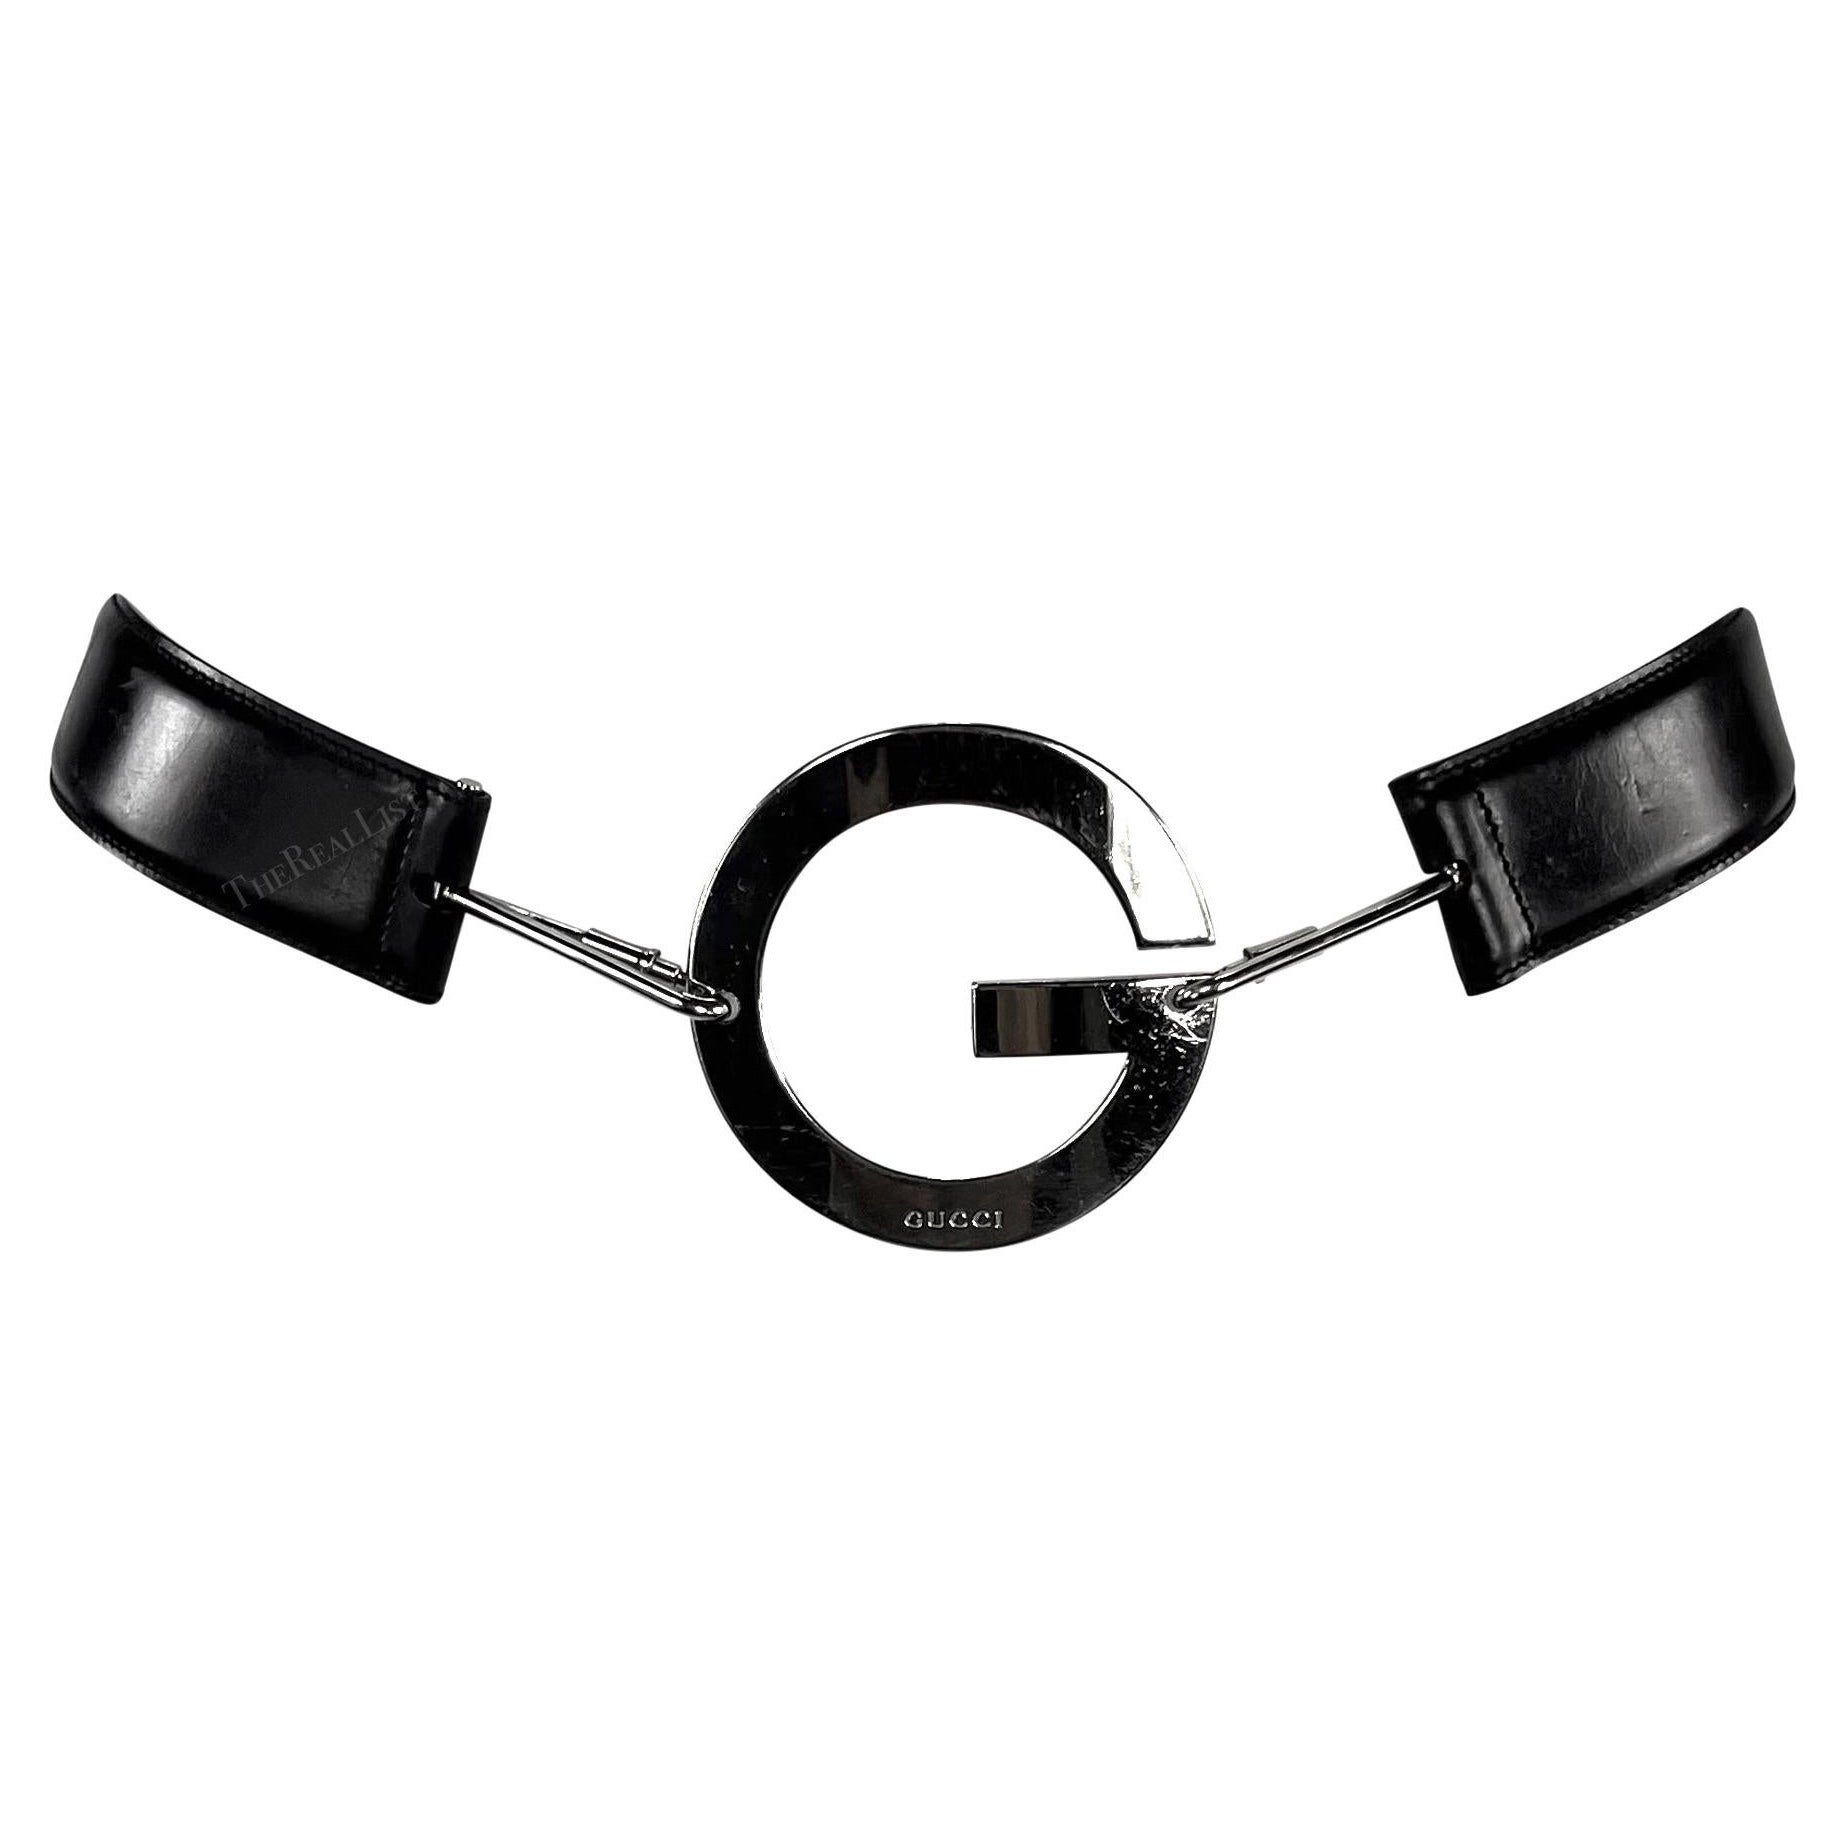 How should a Gucci belt fit?